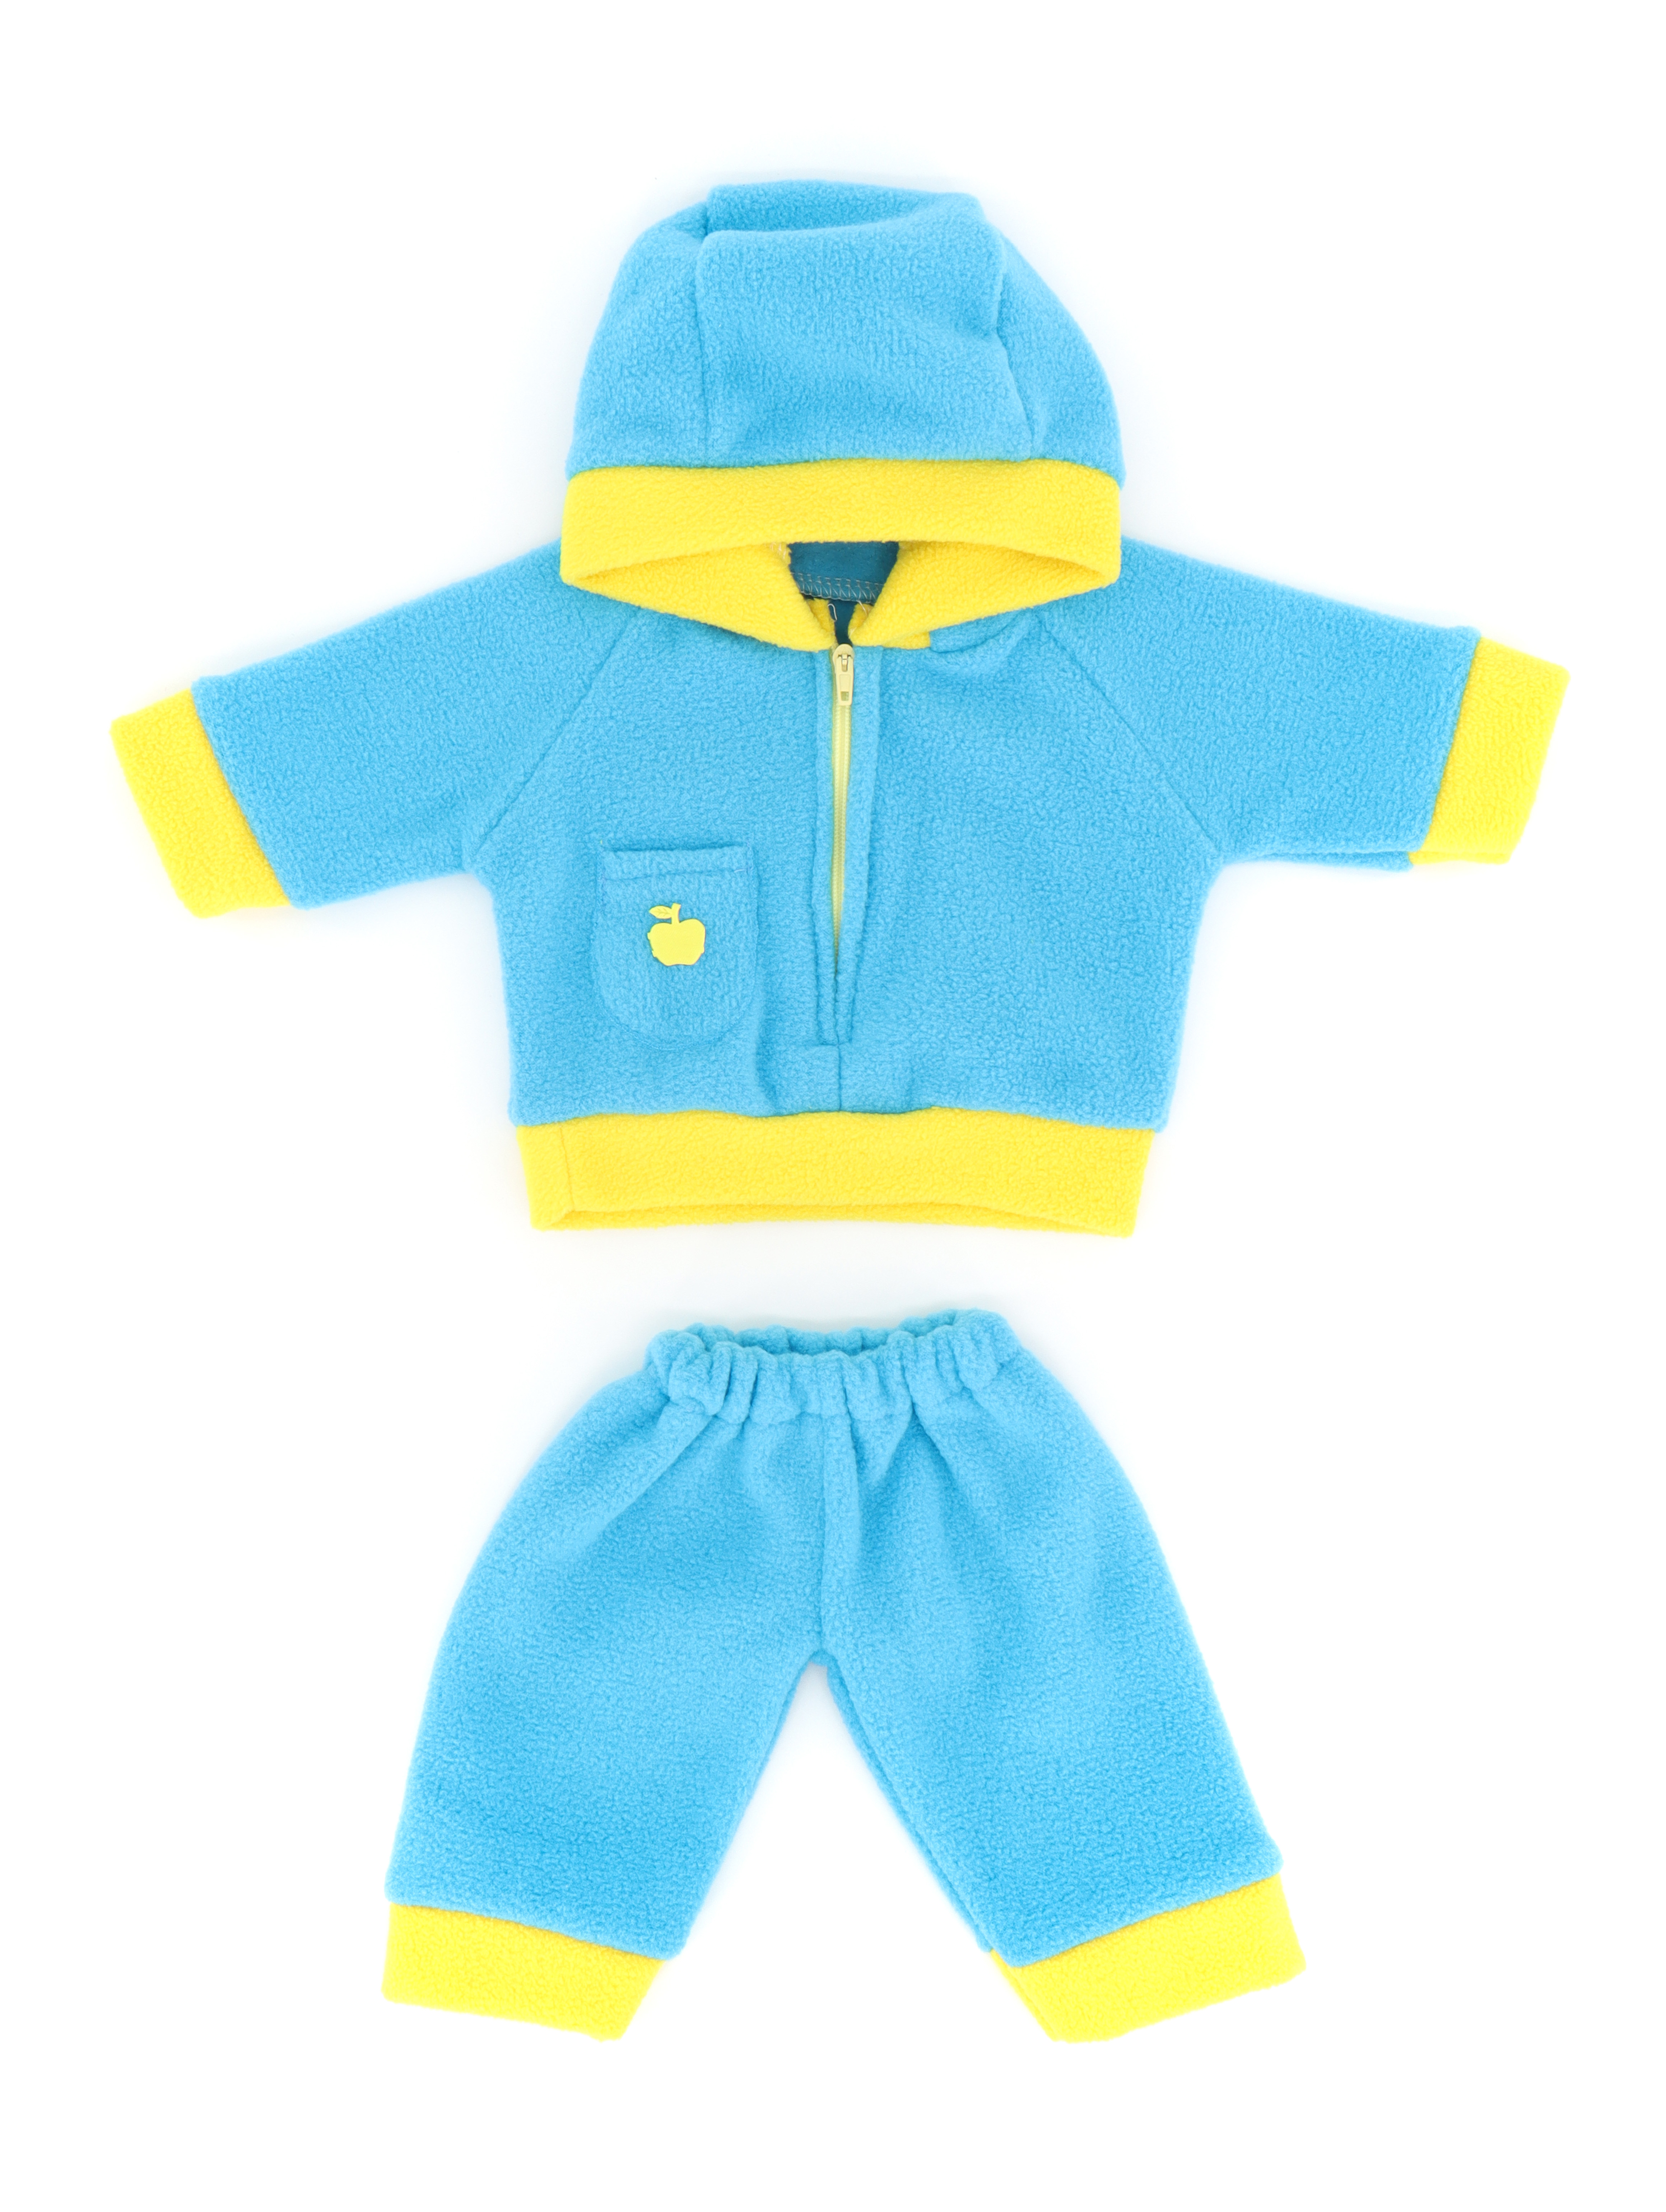 Комплект одежды Модница для пупса 43-48 см 6103 синий-желтый 6103синий-желтый - фото 7